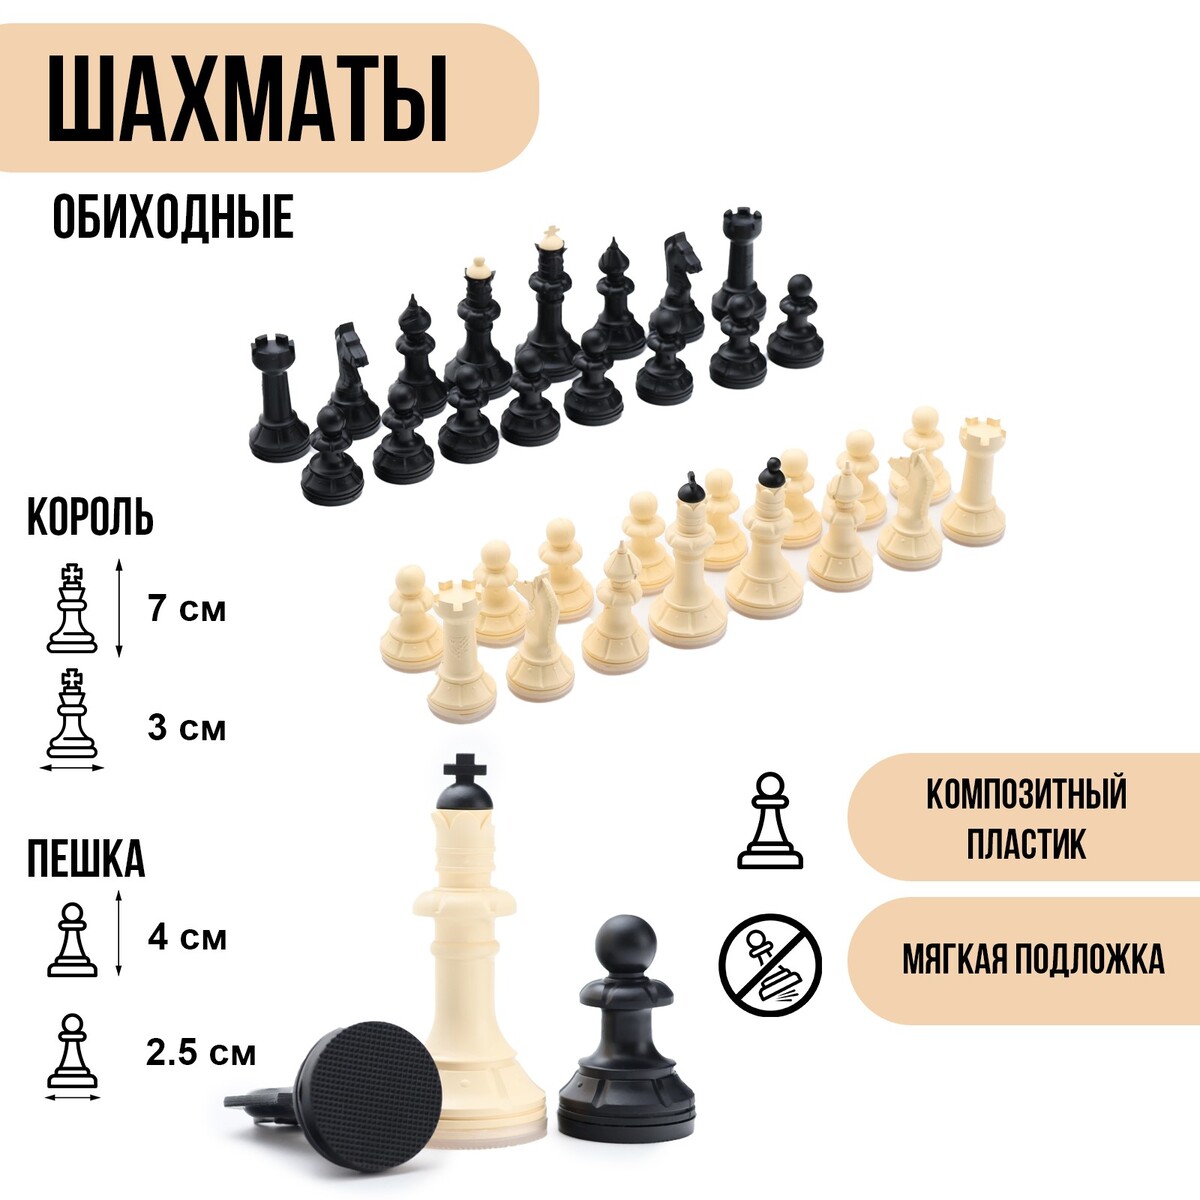 Шахматные фигуры обиходные, король h=7 см, пешка-4 см, пластик шахматные фигуры пластик король h 4 2 см пешка h 2 см